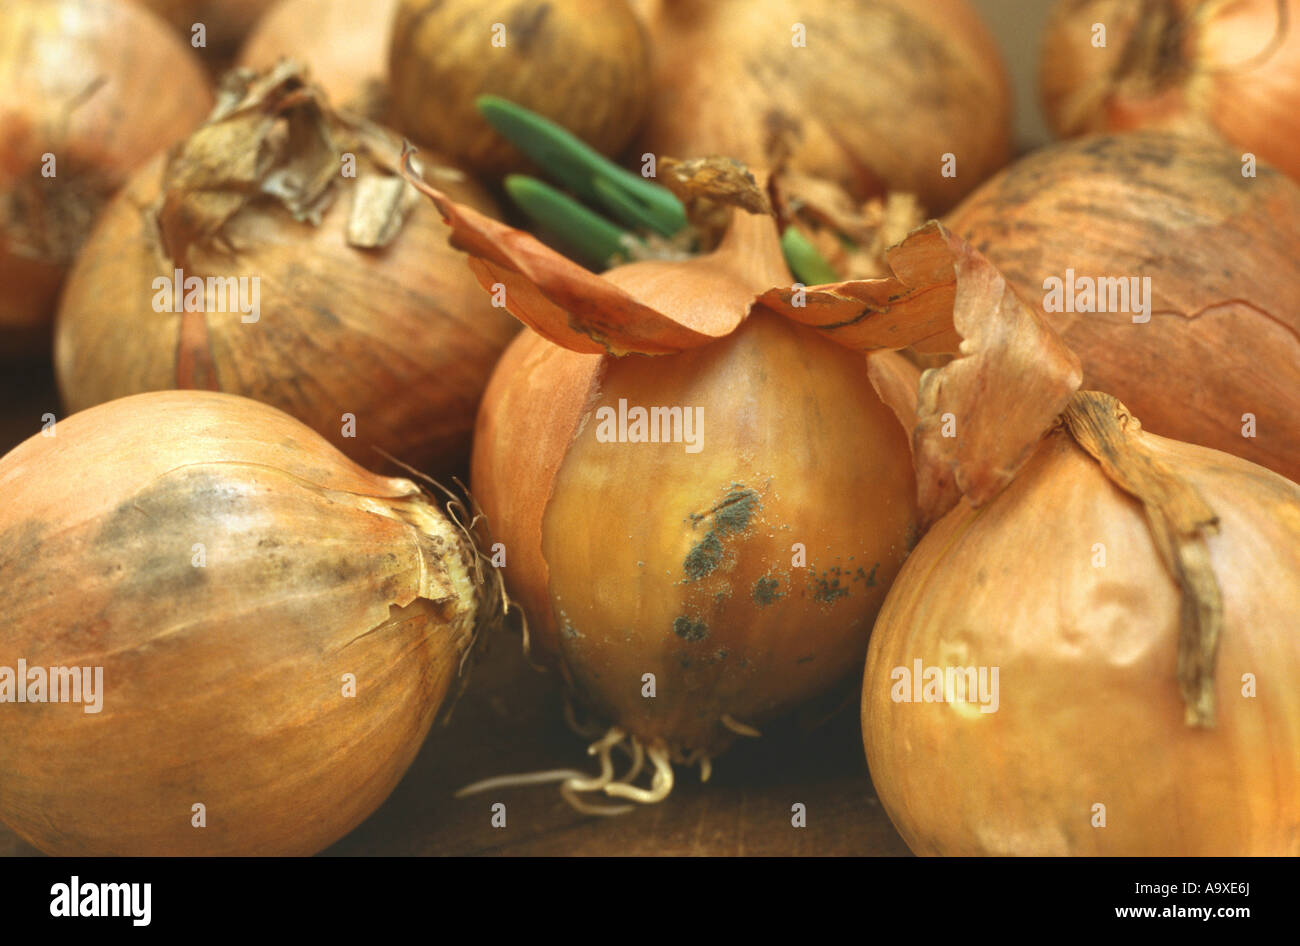 onion disease fungi (Botrytis allii), on onions Stock Photo